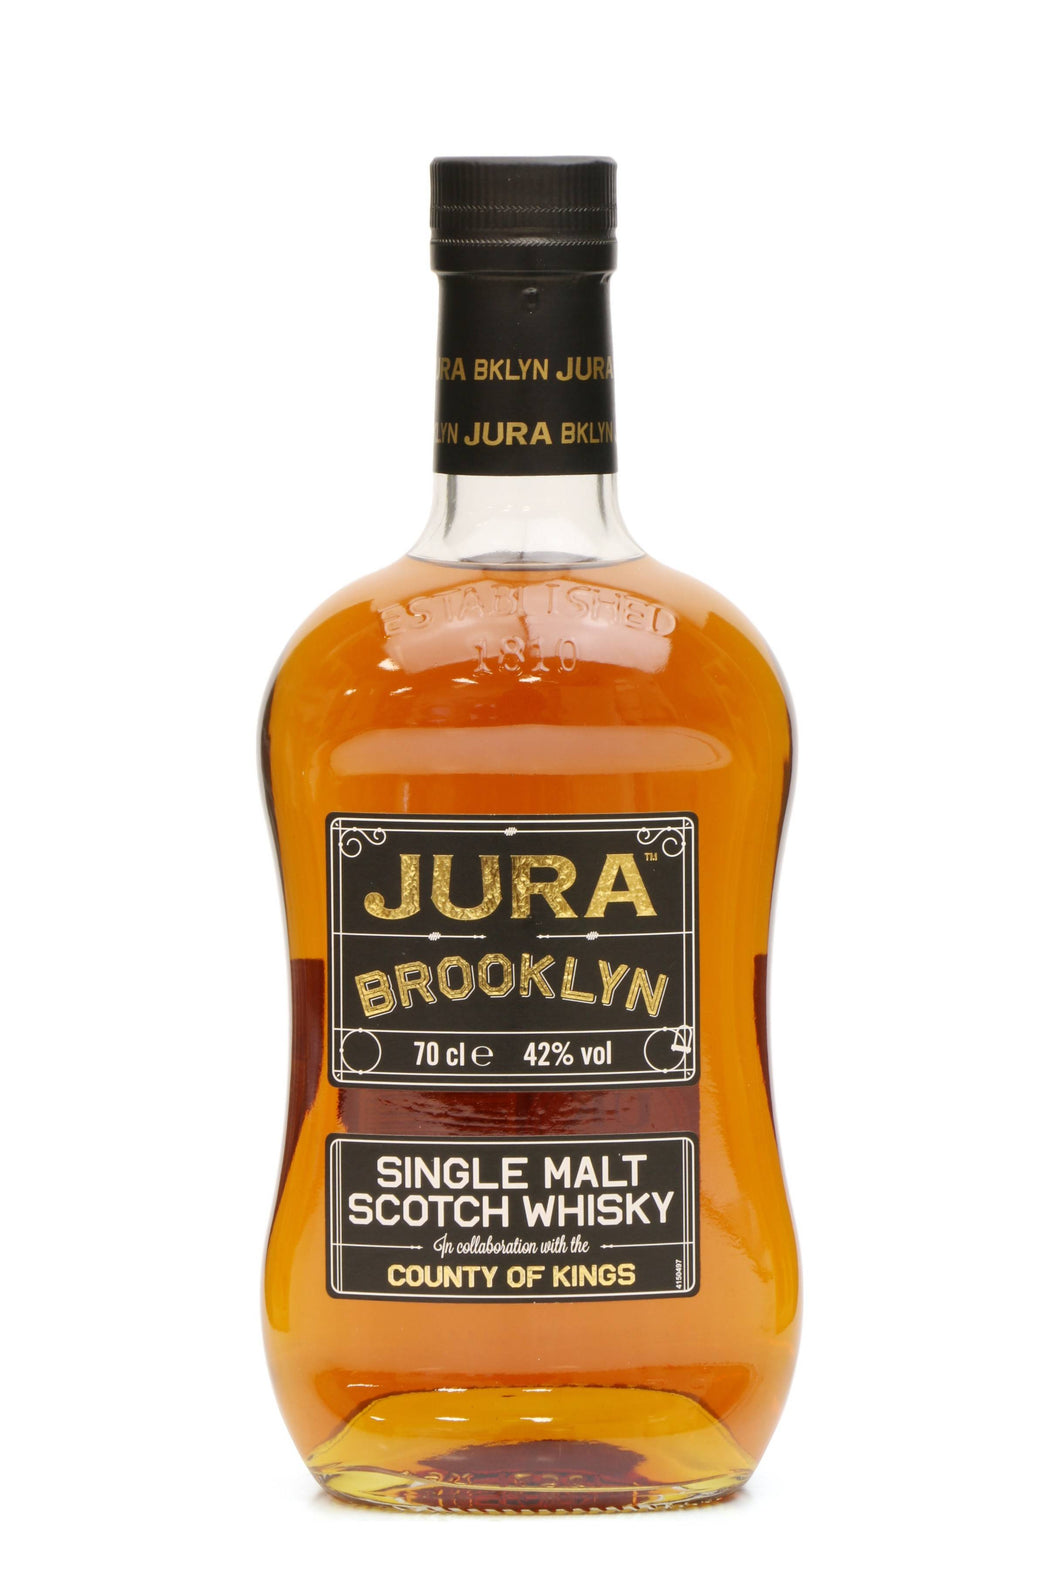 Jura Single Malt Scotch Whisky  Jura Single Malt Scotch Whisky